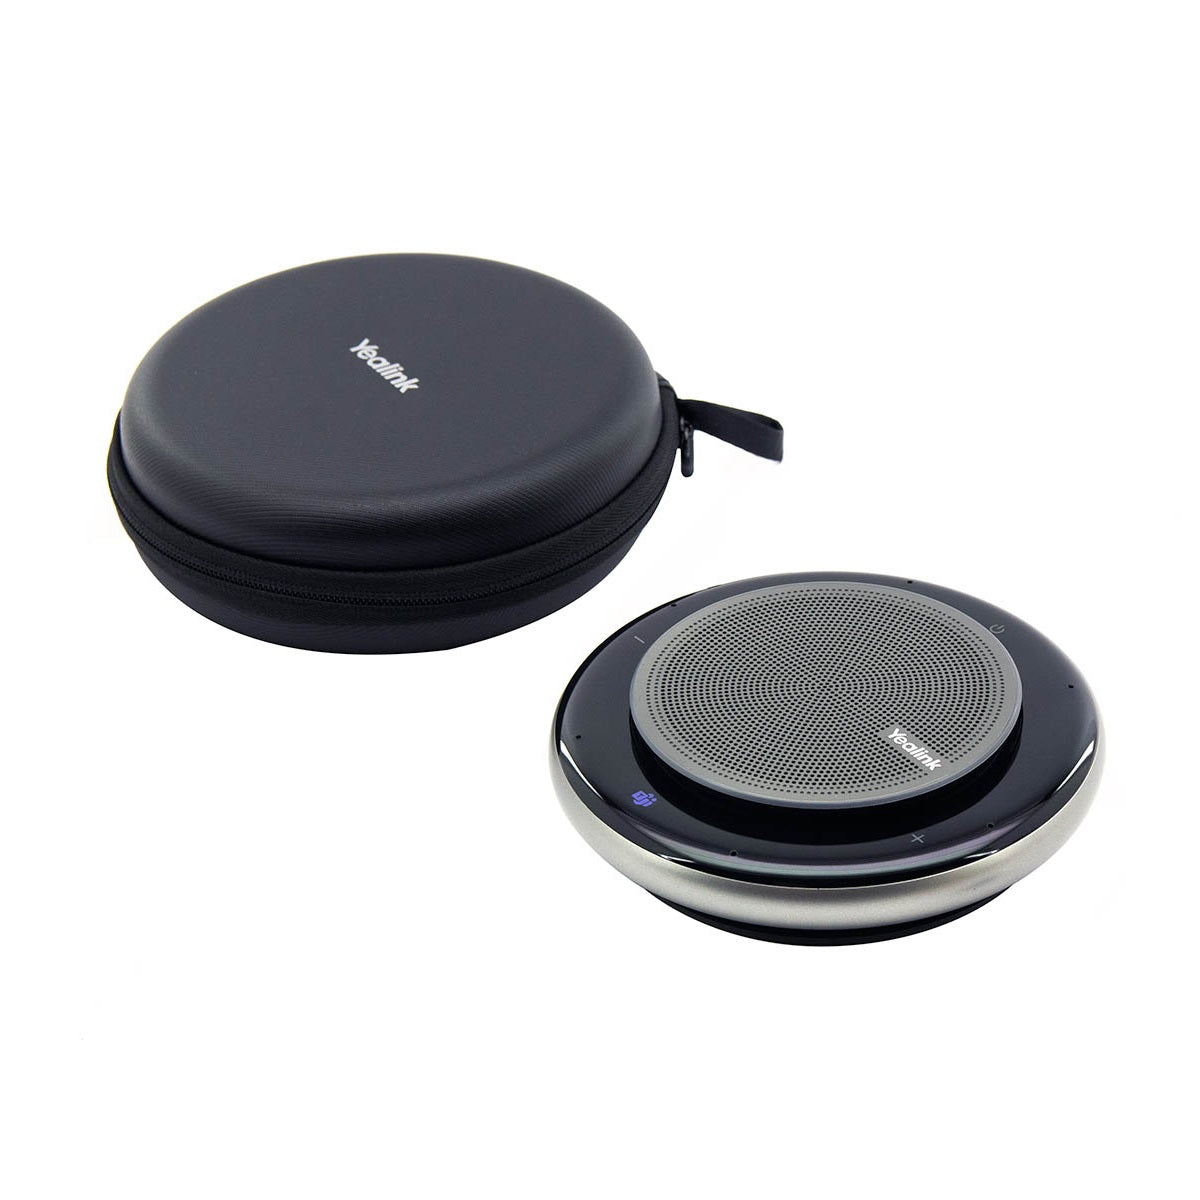 yealink-cp900-portable-bluetooth-speaker-travel-case